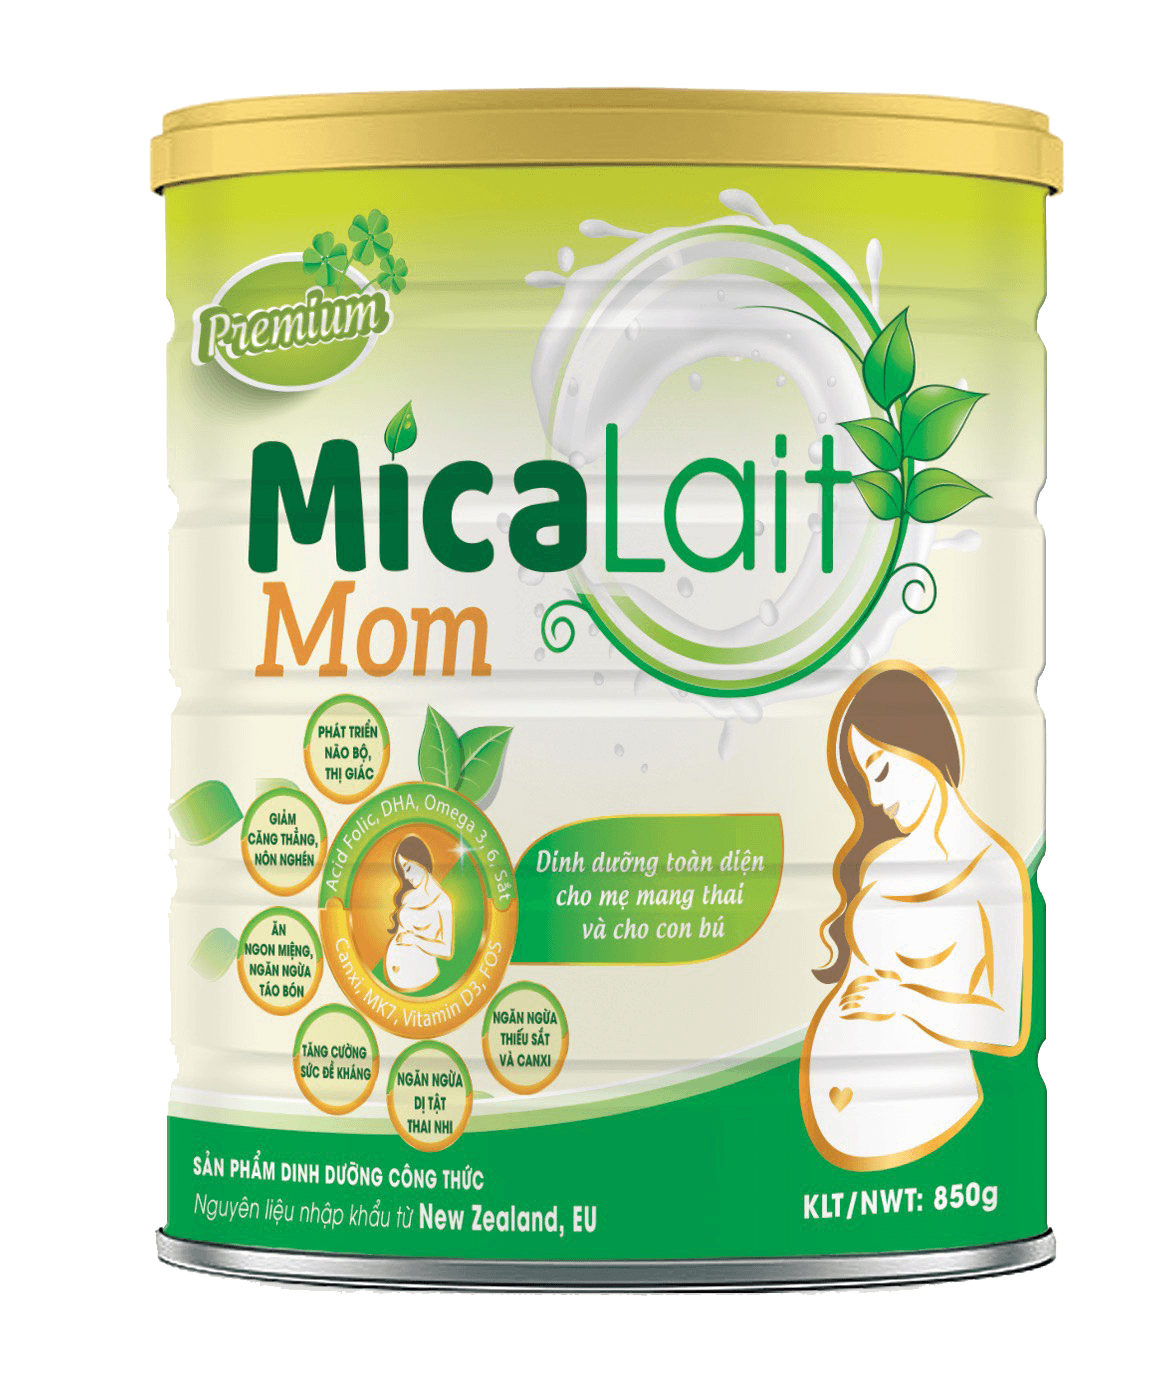 Sữa Micalait Mom